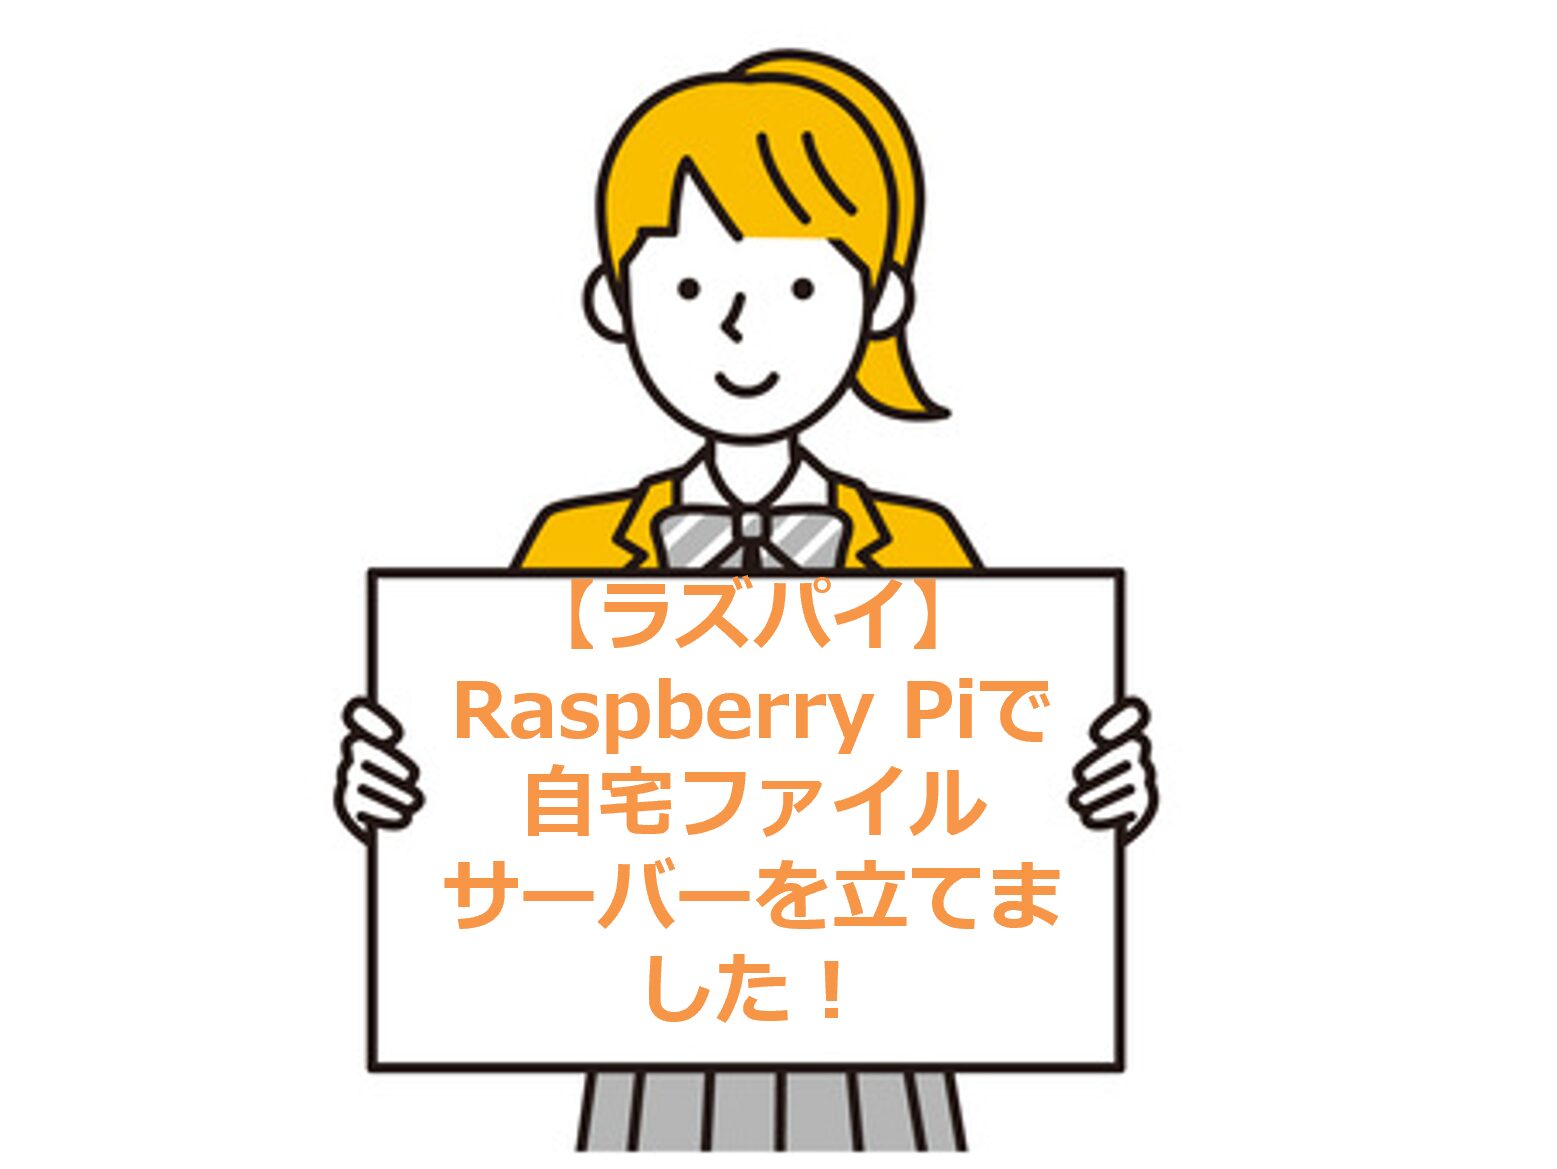 【ラズパイ】Raspberry Piで自宅ファイルサーバーを立てました！